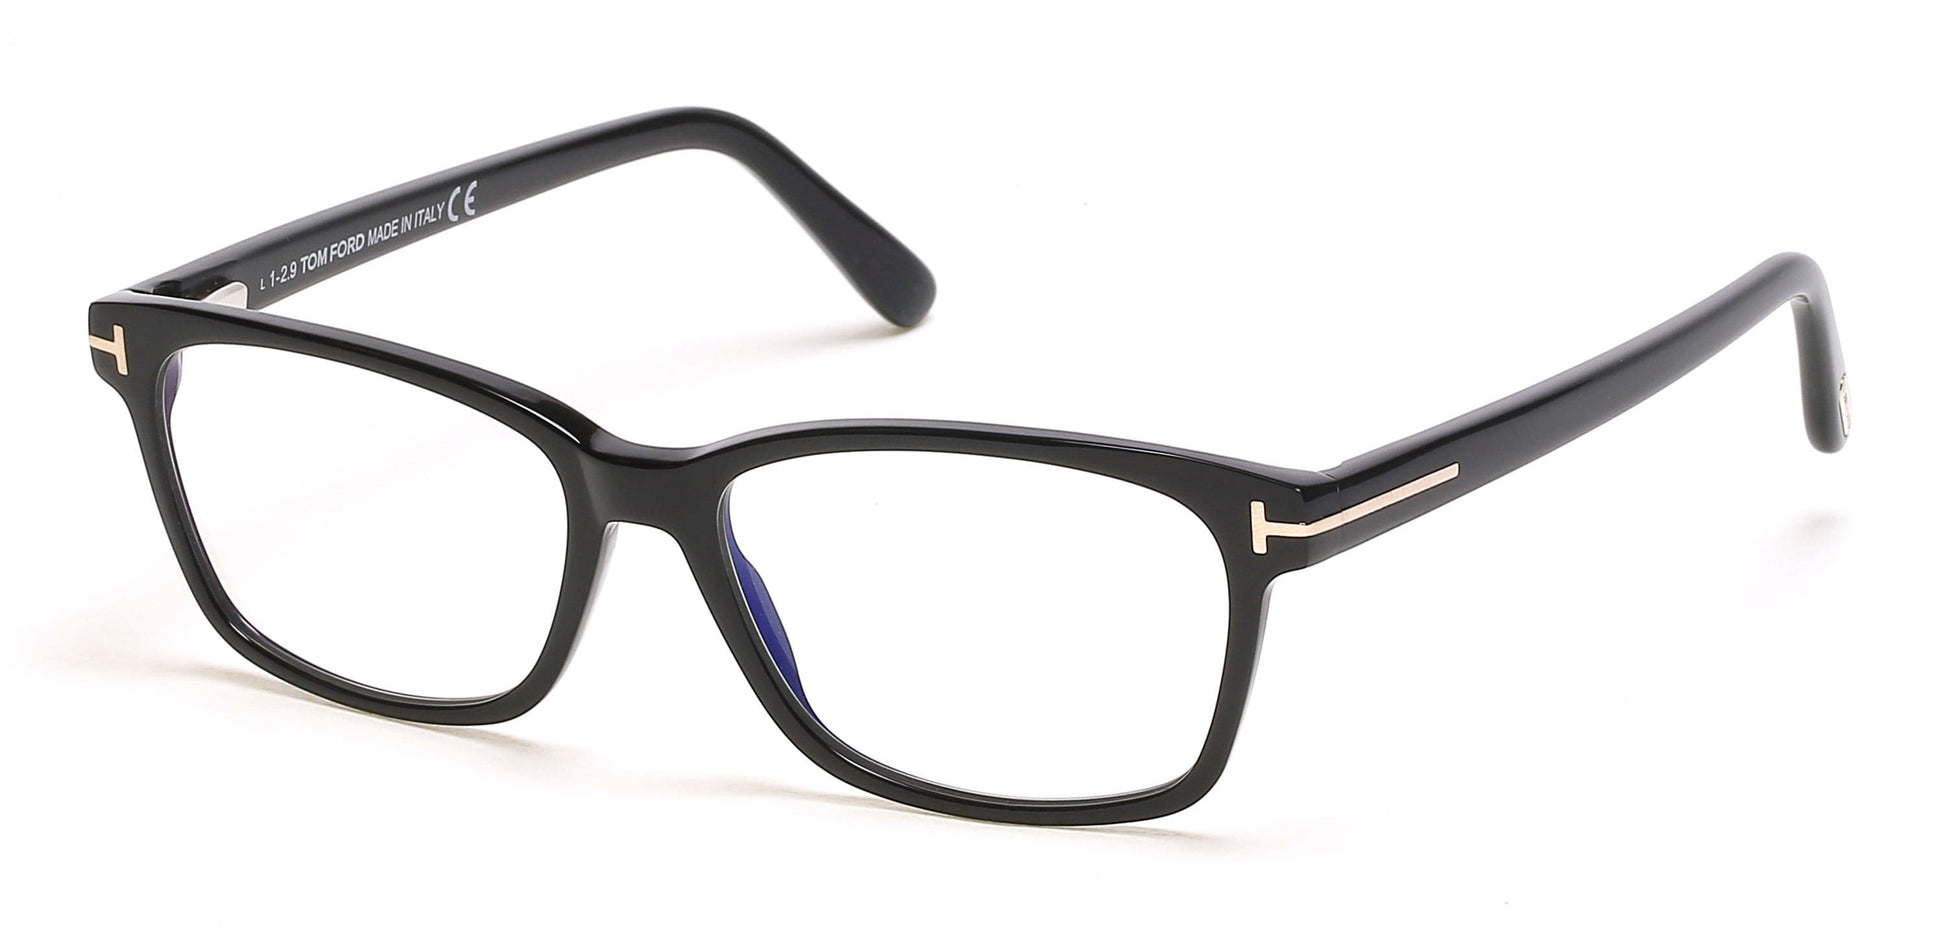 Tom Ford FT5713-B Rectangular Eyeglasses 001-001 - Shiny Black/ Blue Block Lenses